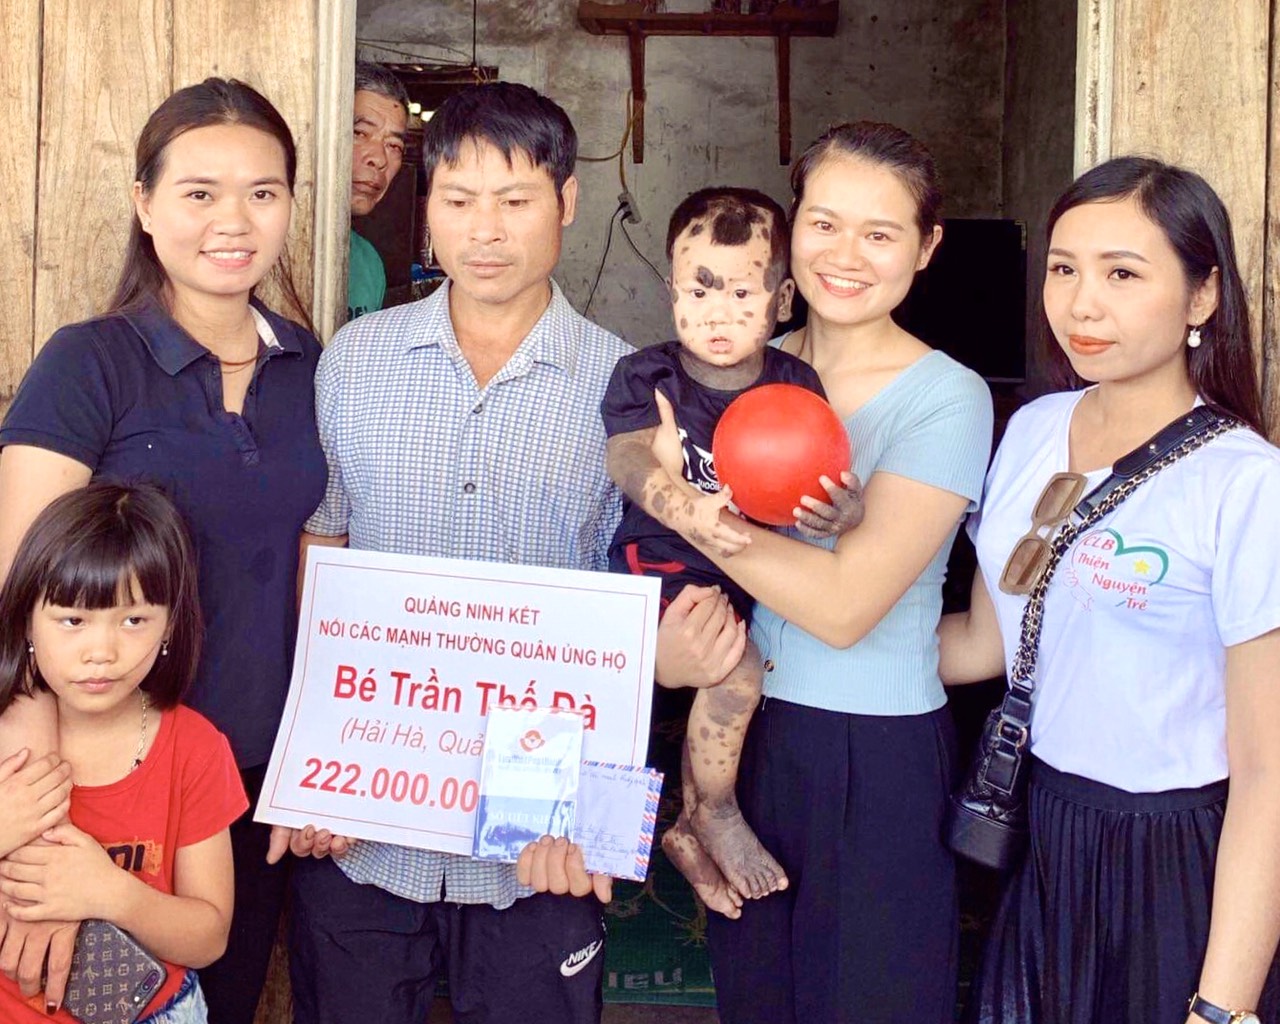 Nguyễn Thu Phương cùng nhóm thiện nguyện trao tiền hỗ trợ cho gia đình bé Trần Thế Đà (xã Quảng Long, huyện Hải Hà).